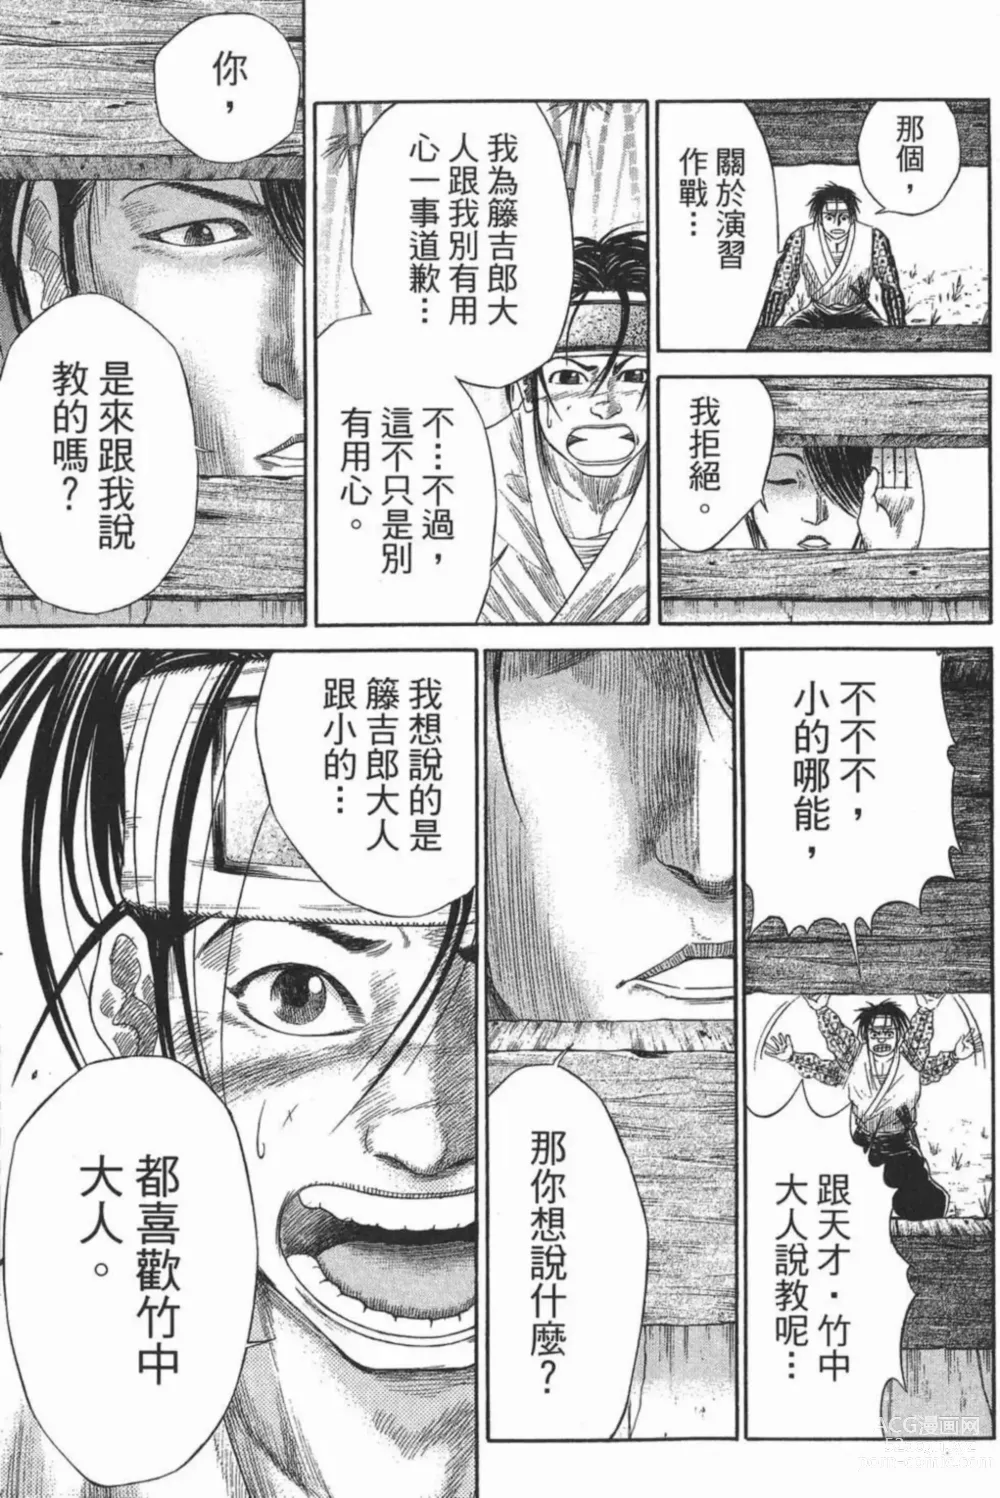 Page 201 of manga [宫下英树]战国第一卷［中文］